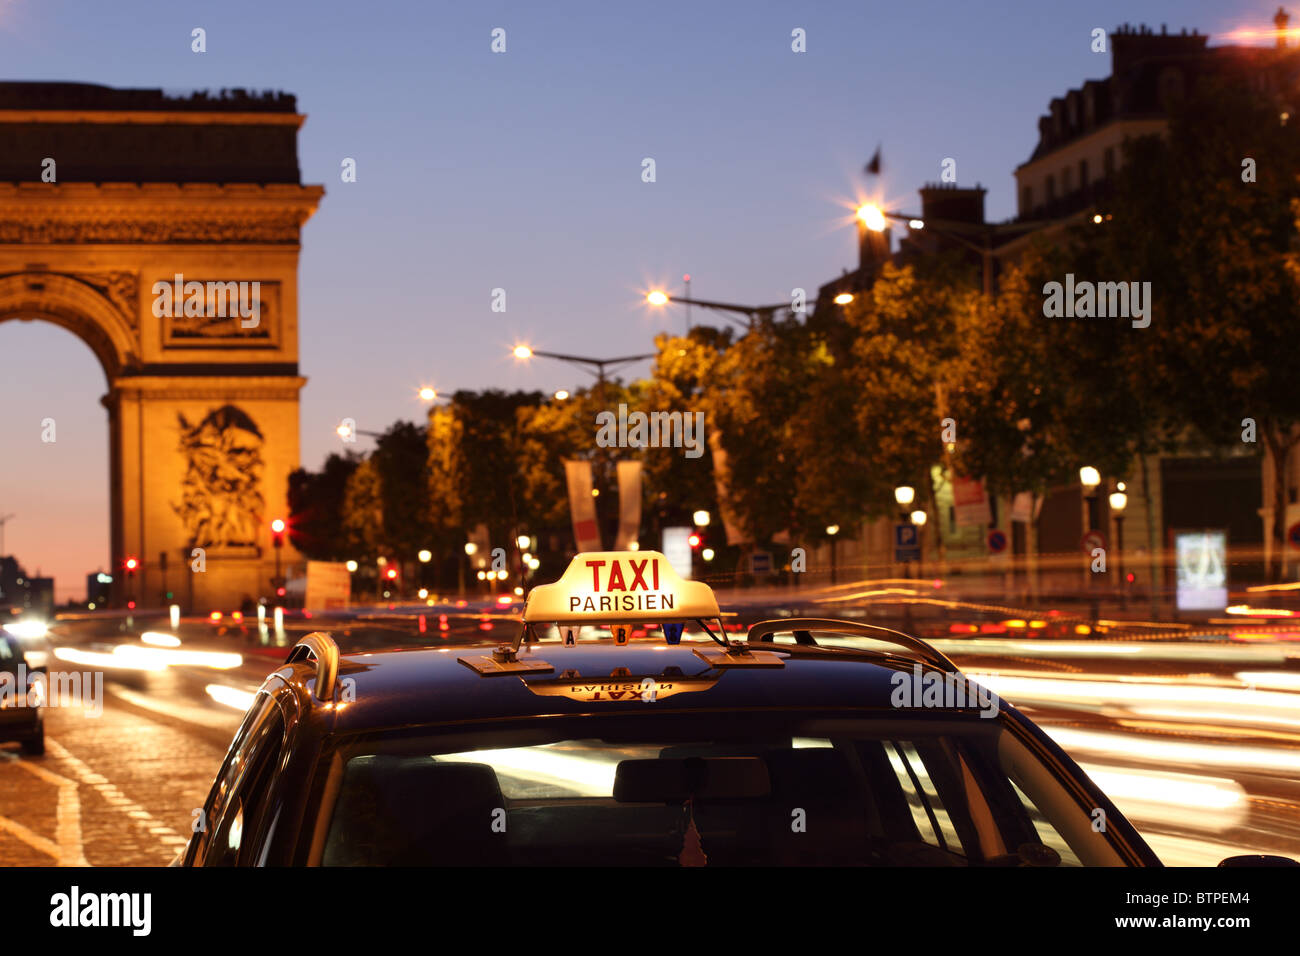 Paris taxi by the Arc de Triumph Stock Photo